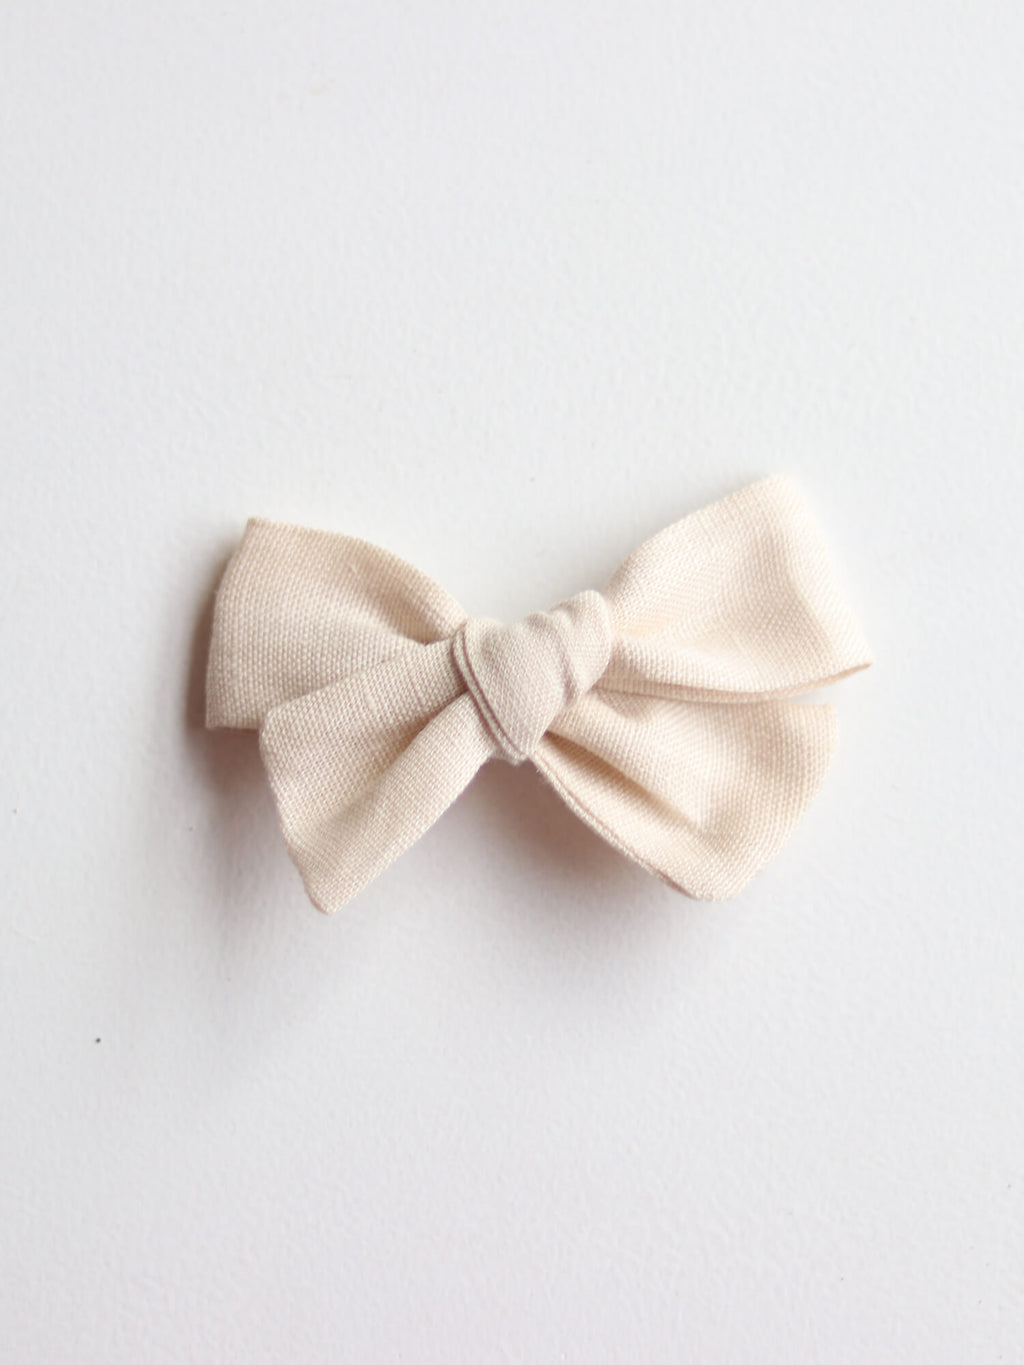 Cream linen bow hair clip for flower girls.